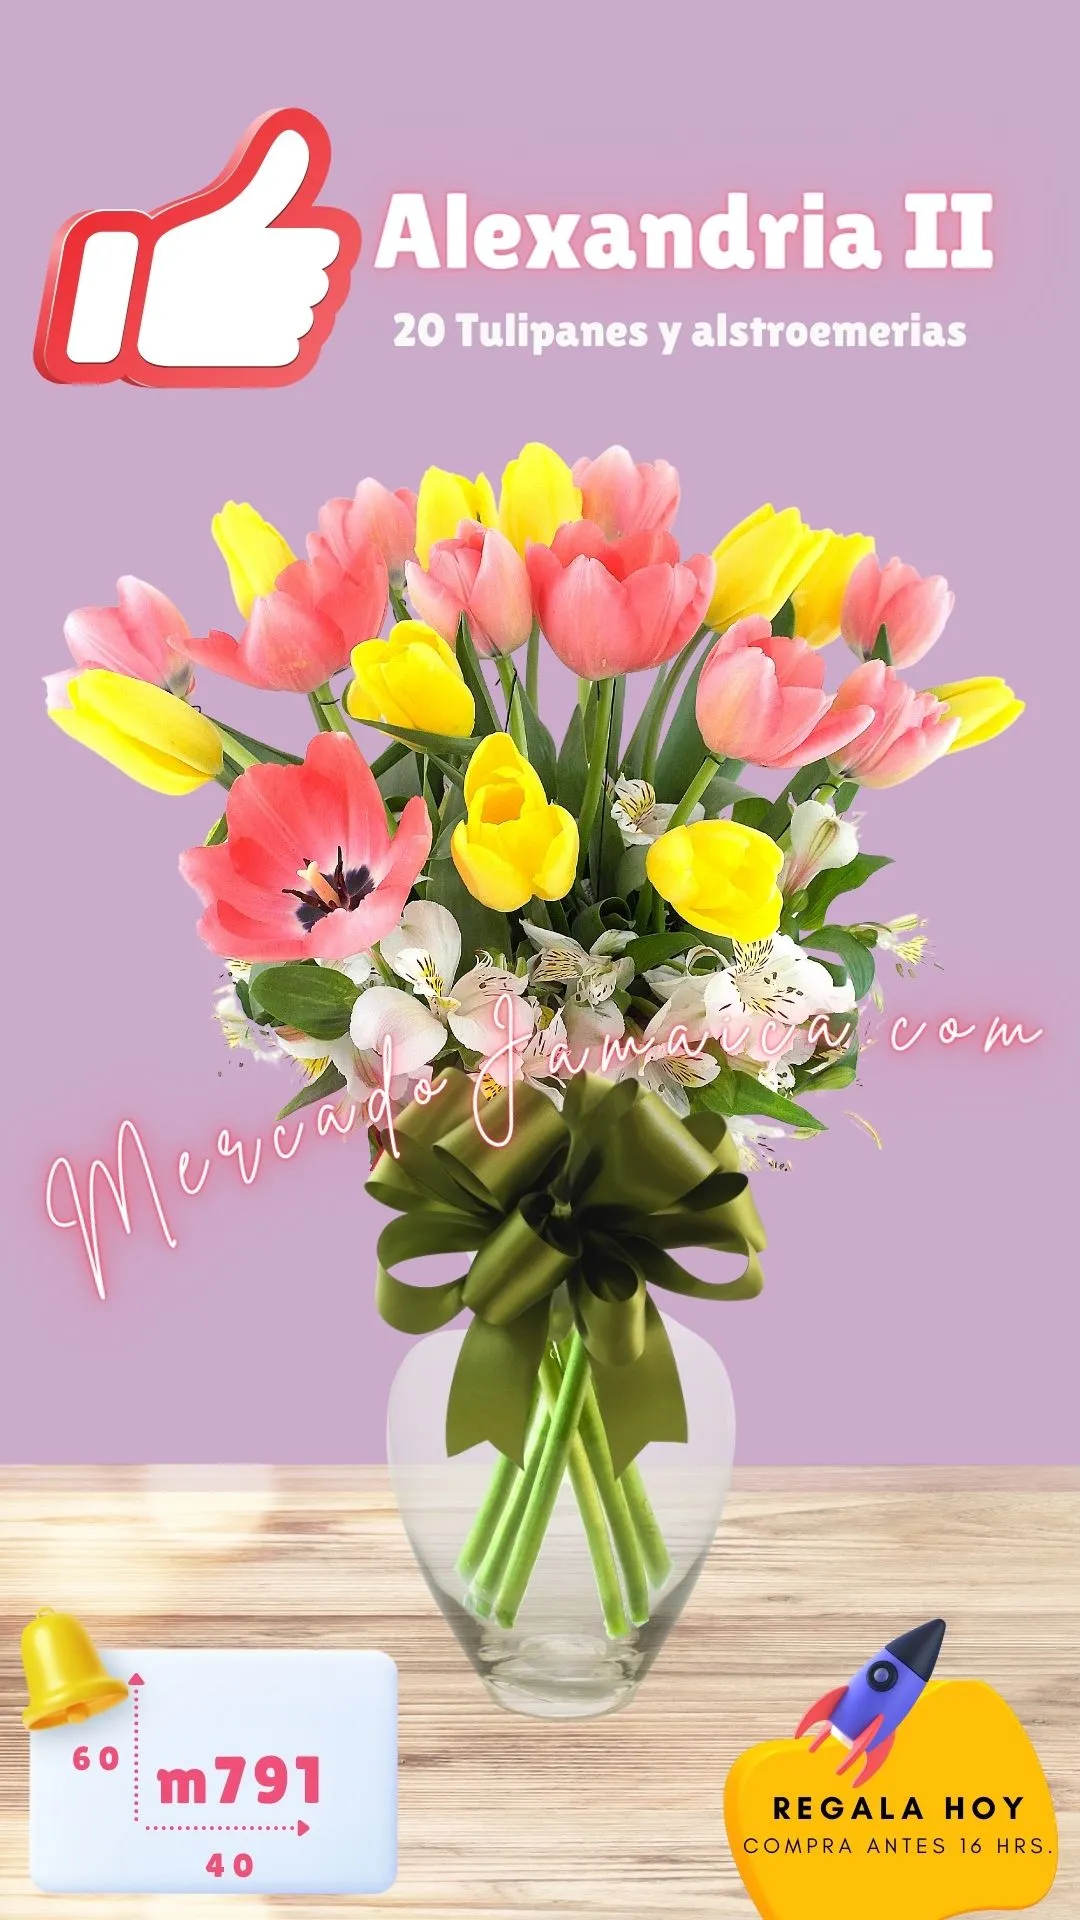 Enviar flores ciudad de méxico tulipanes alexandria II